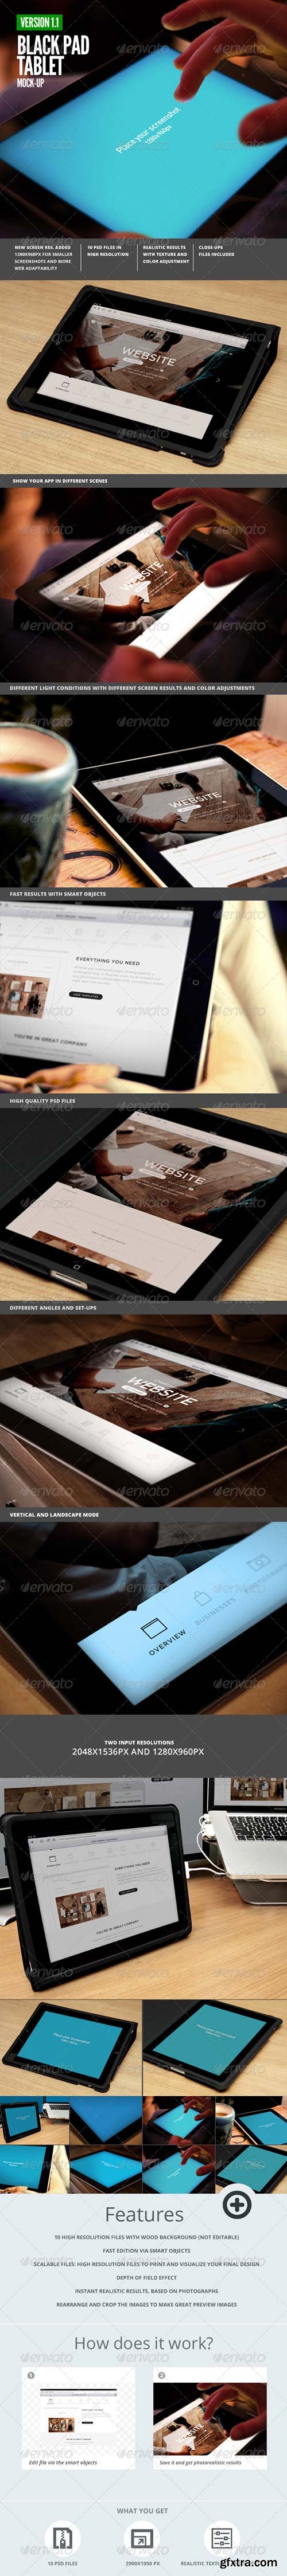 GraphicRiver - Black Pad | Tablet App UI Mock-Up